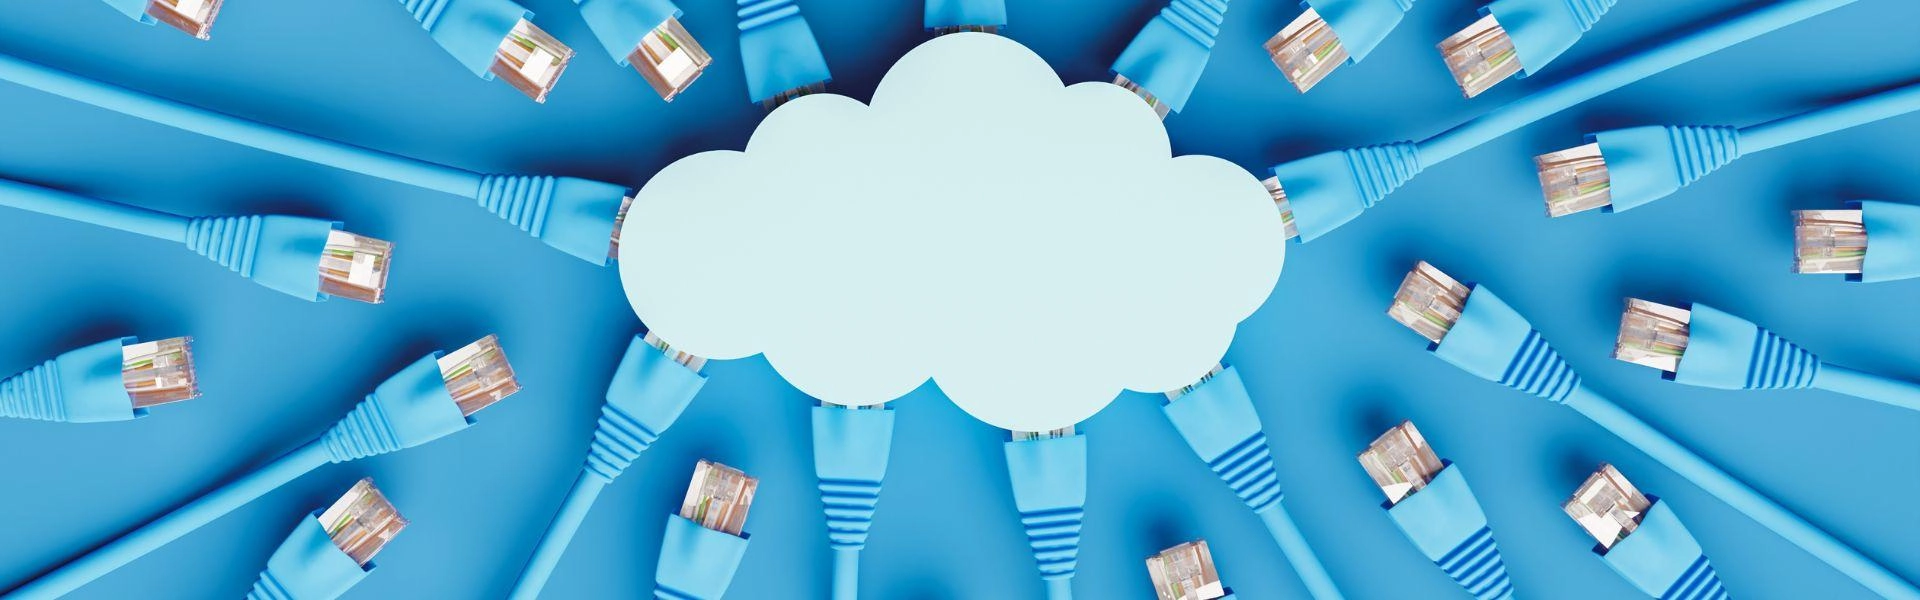 Imagem conceitual de redes de internet conectadas à uma nuvem.